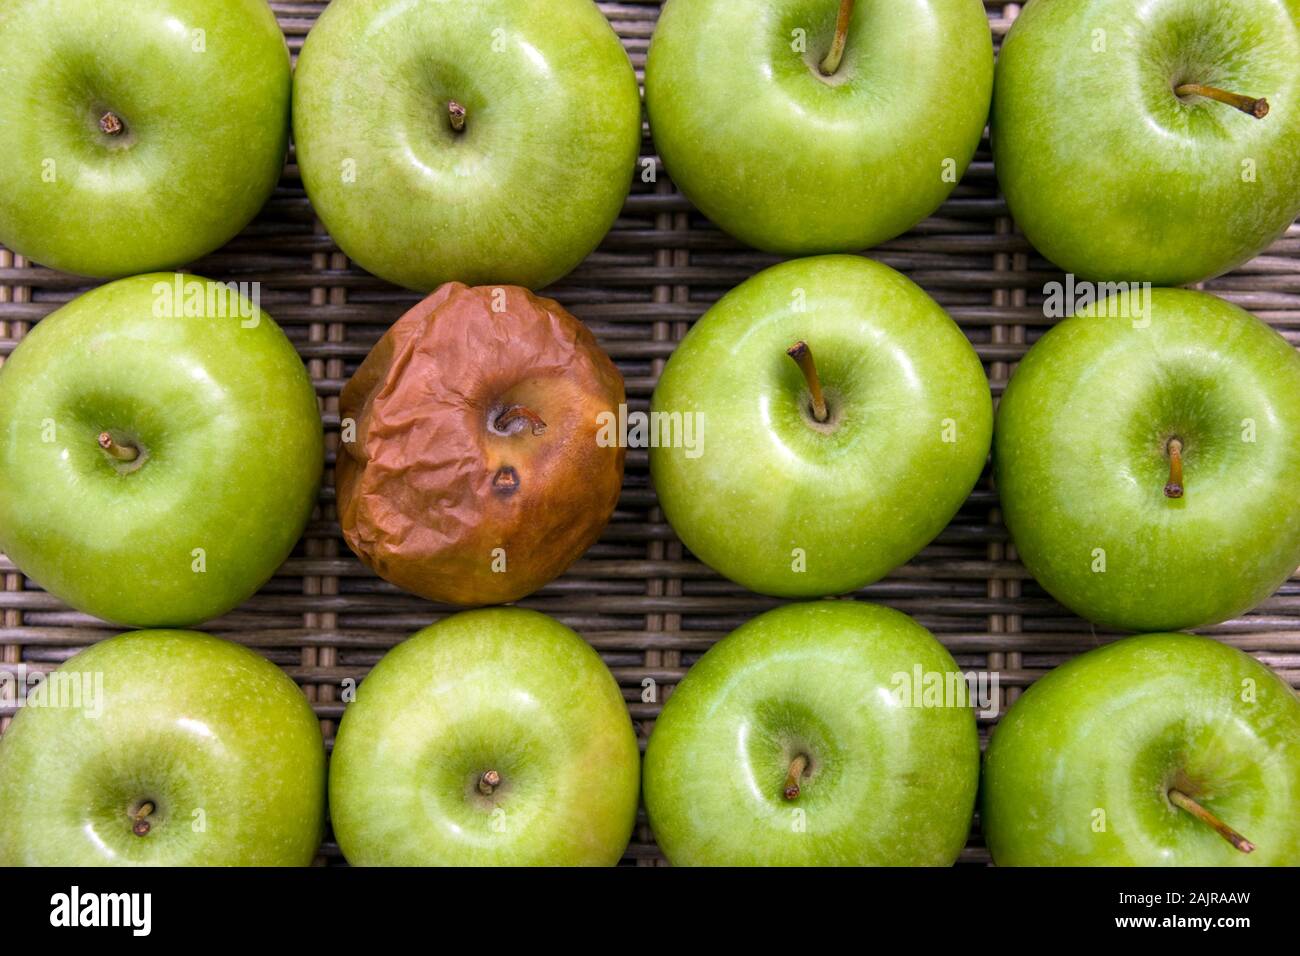 Una bad apple - una mela marcia in un gruppo di una dozzina di mele. Foto Stock